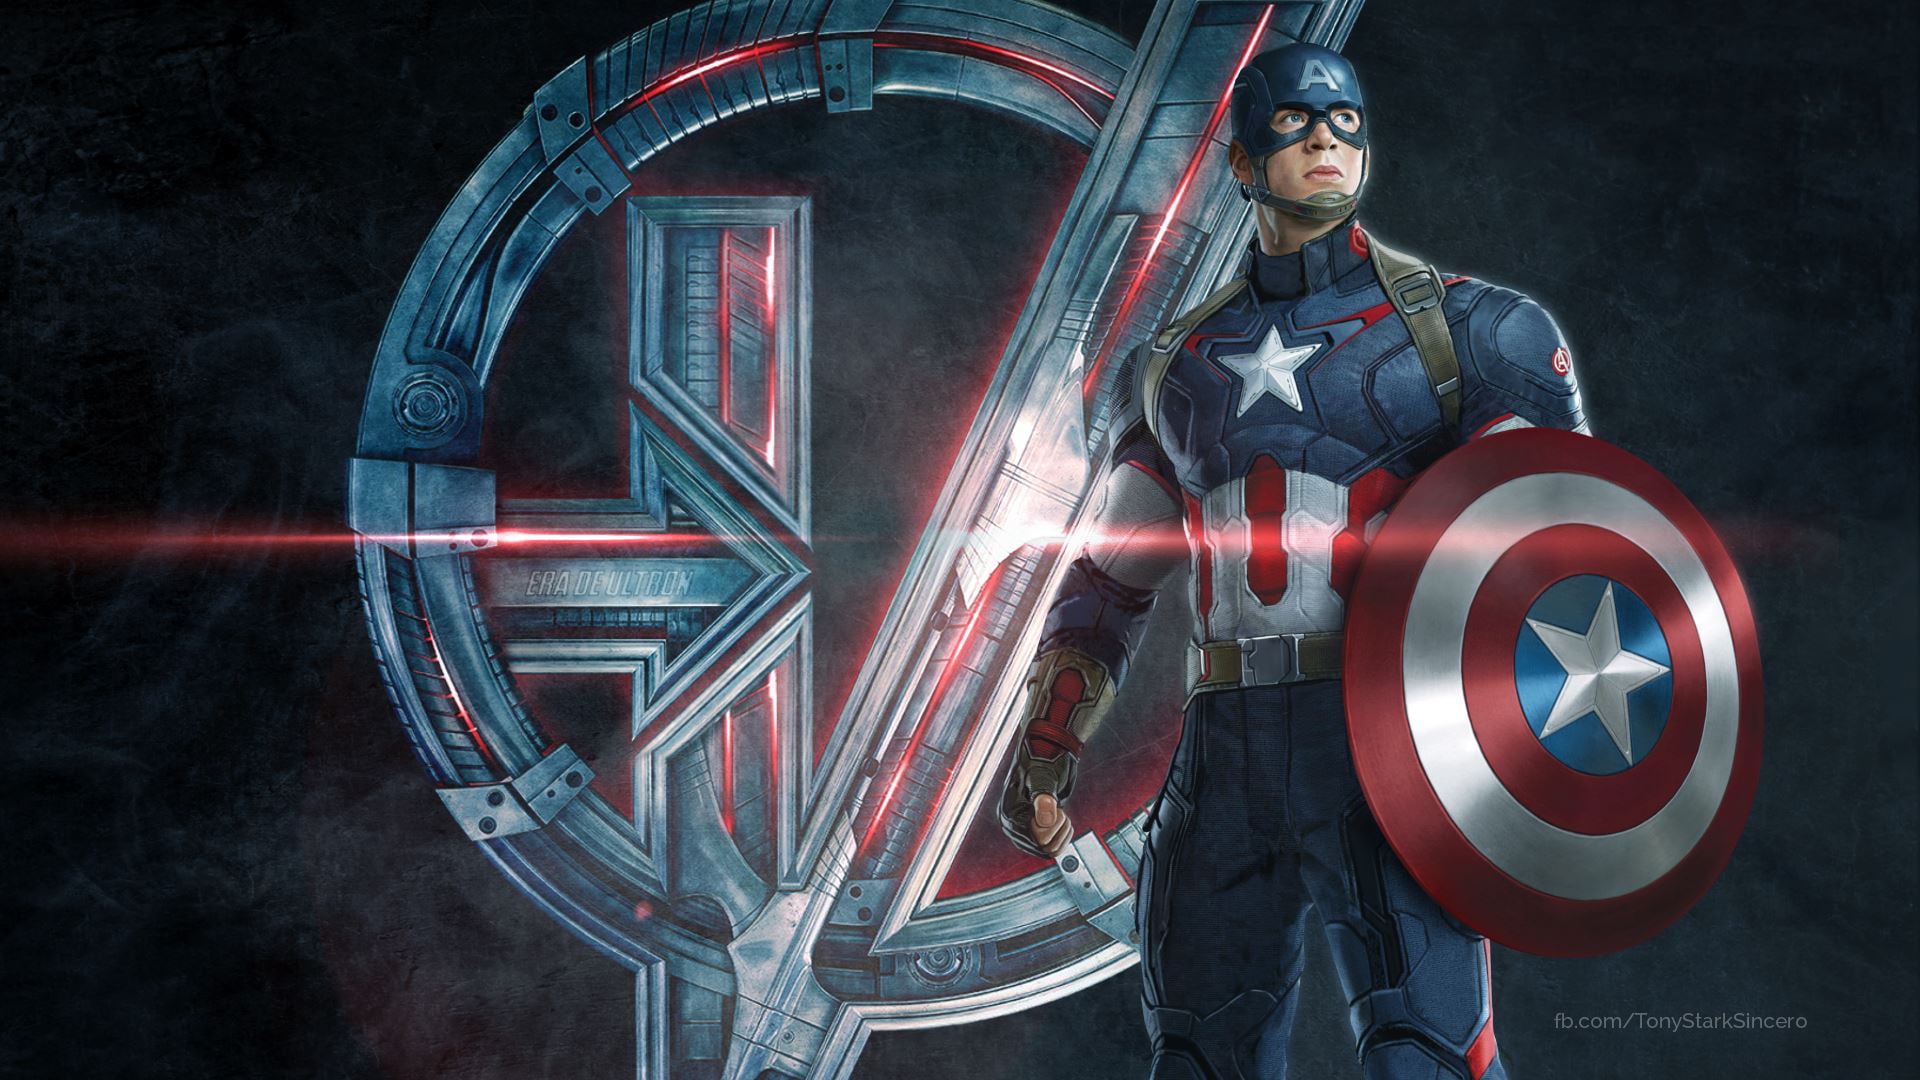 Captain America digital wallpaper, The Avengers, Avengers: Age of Ultron